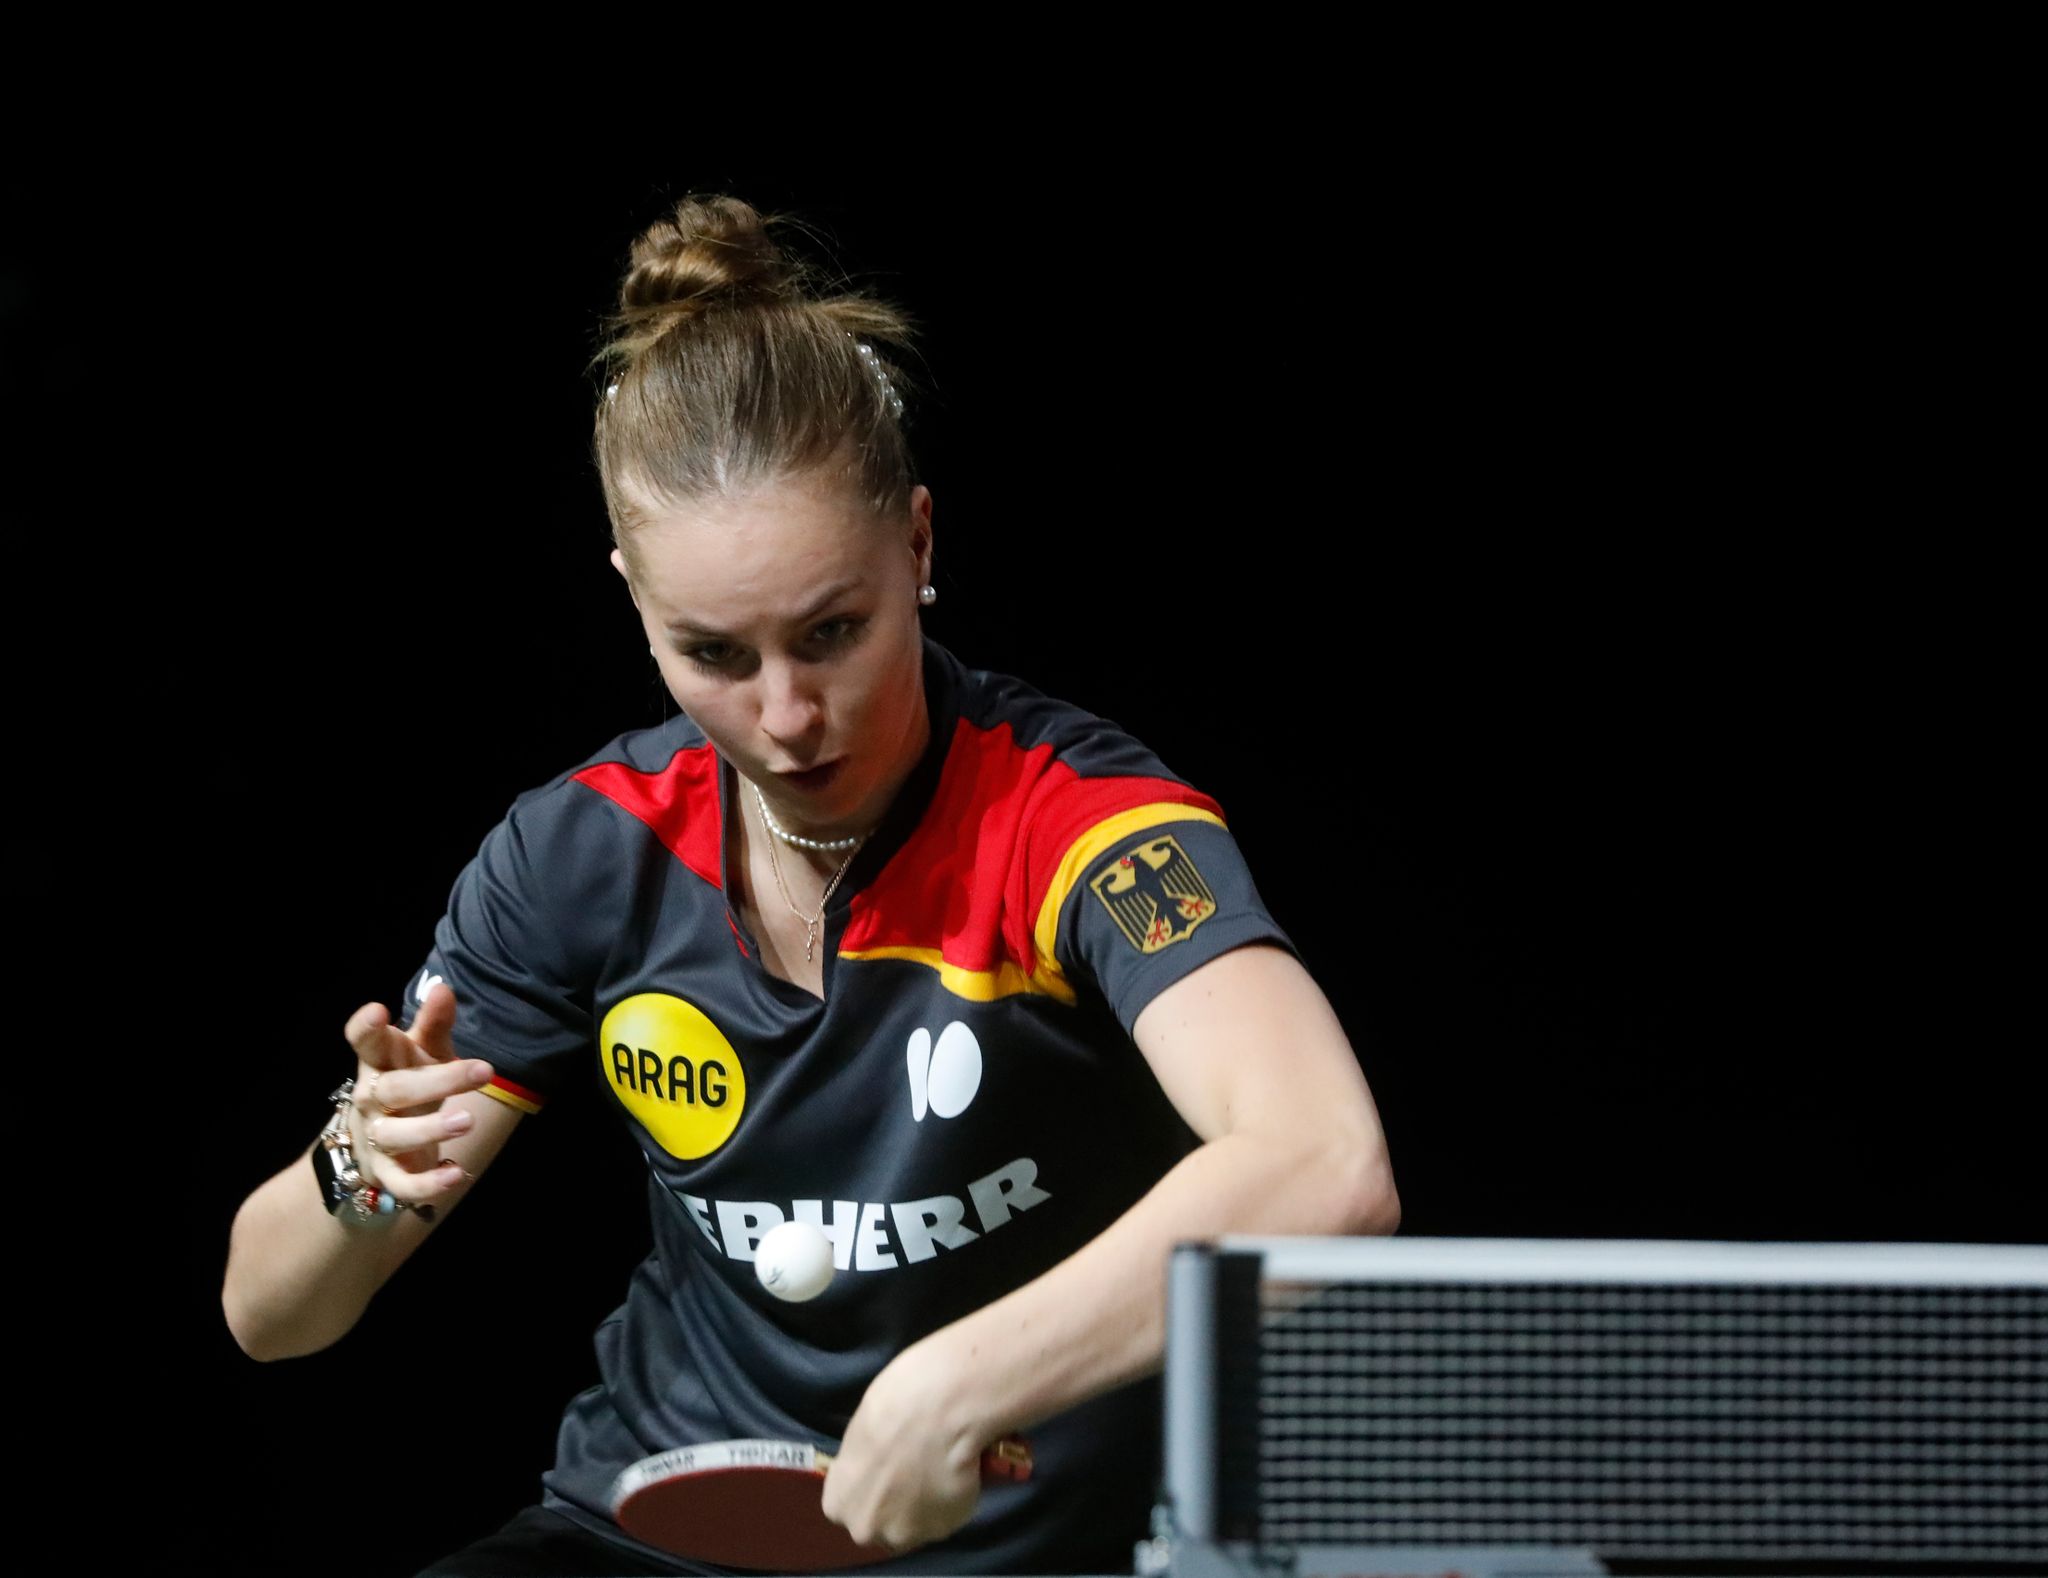 Tischtennis-Nationalspielerin Annett Kaufmann gewann das Auftaktspiel mit der deutschen Mannschaft gegen England.